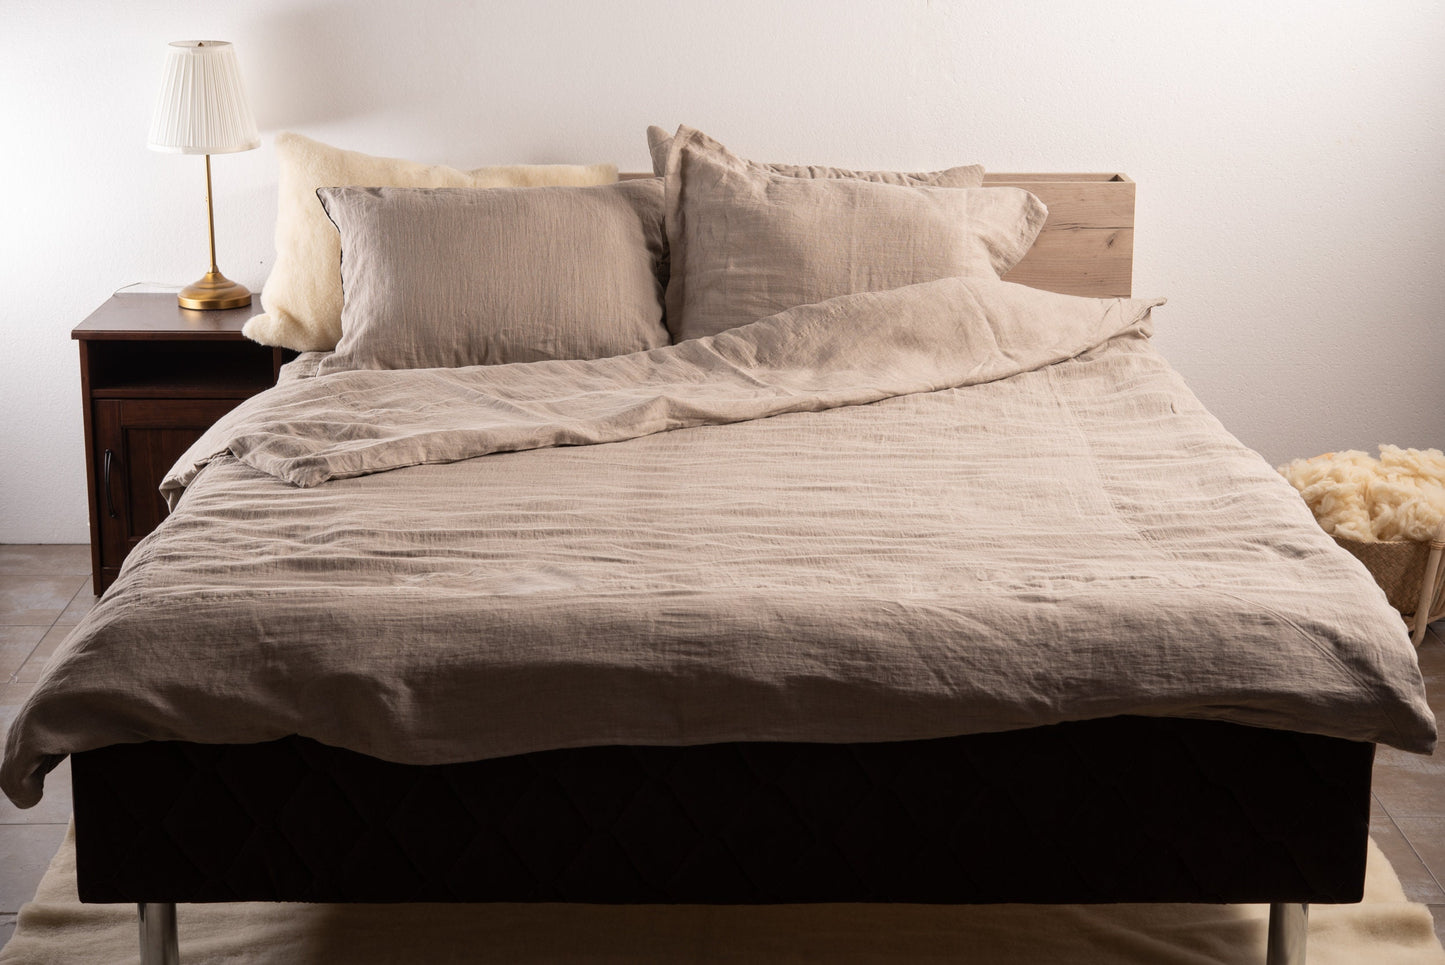 Linen bedding set (flat sheet + 2 pillowcases + 1 duvet cover)